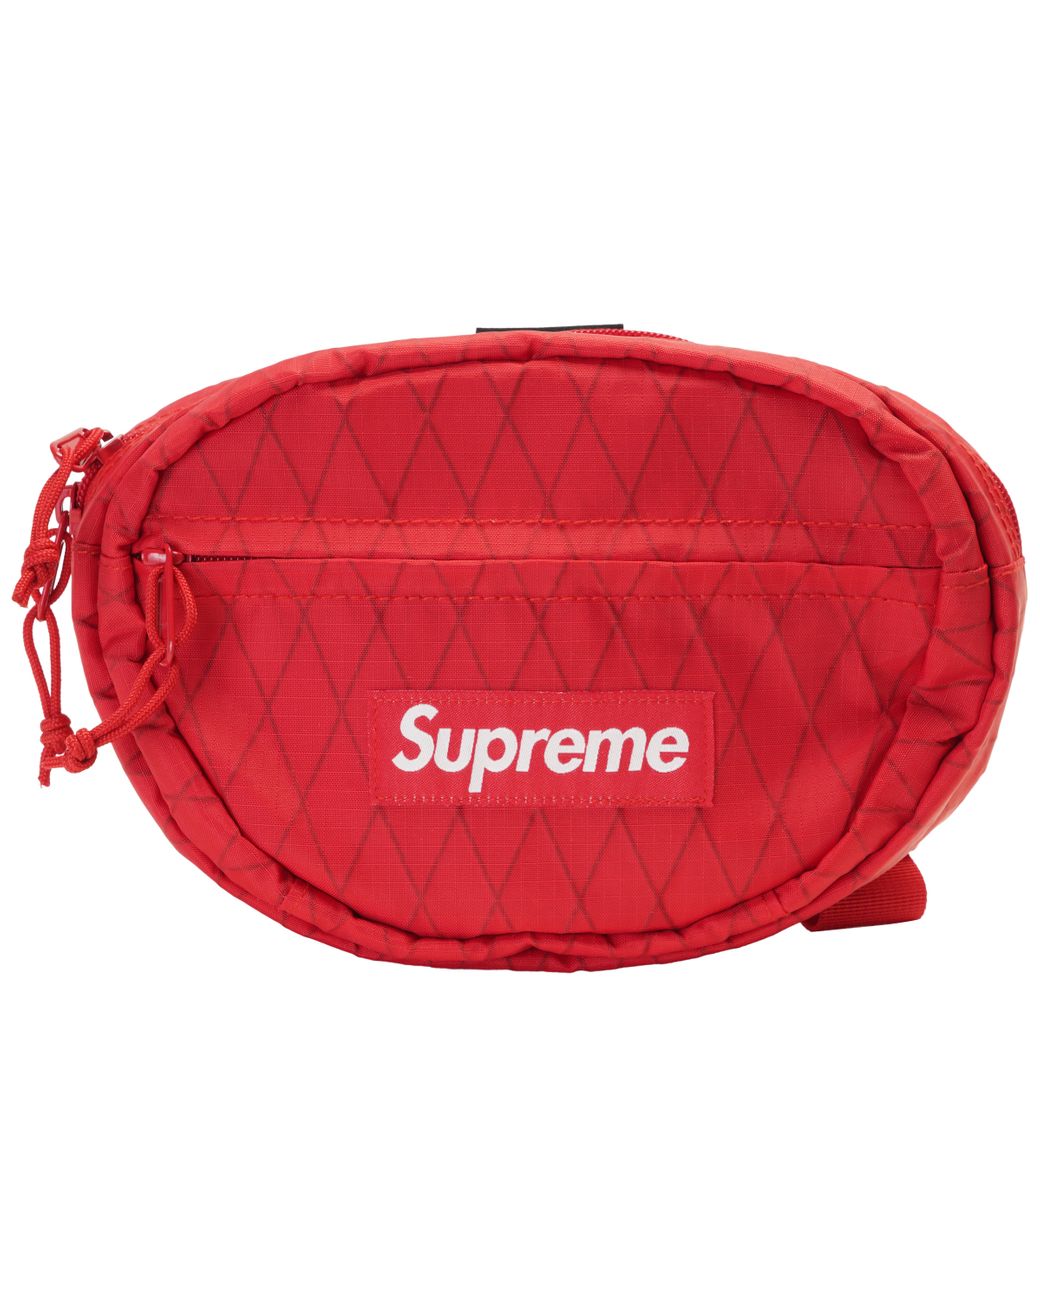 fw18 supreme bag